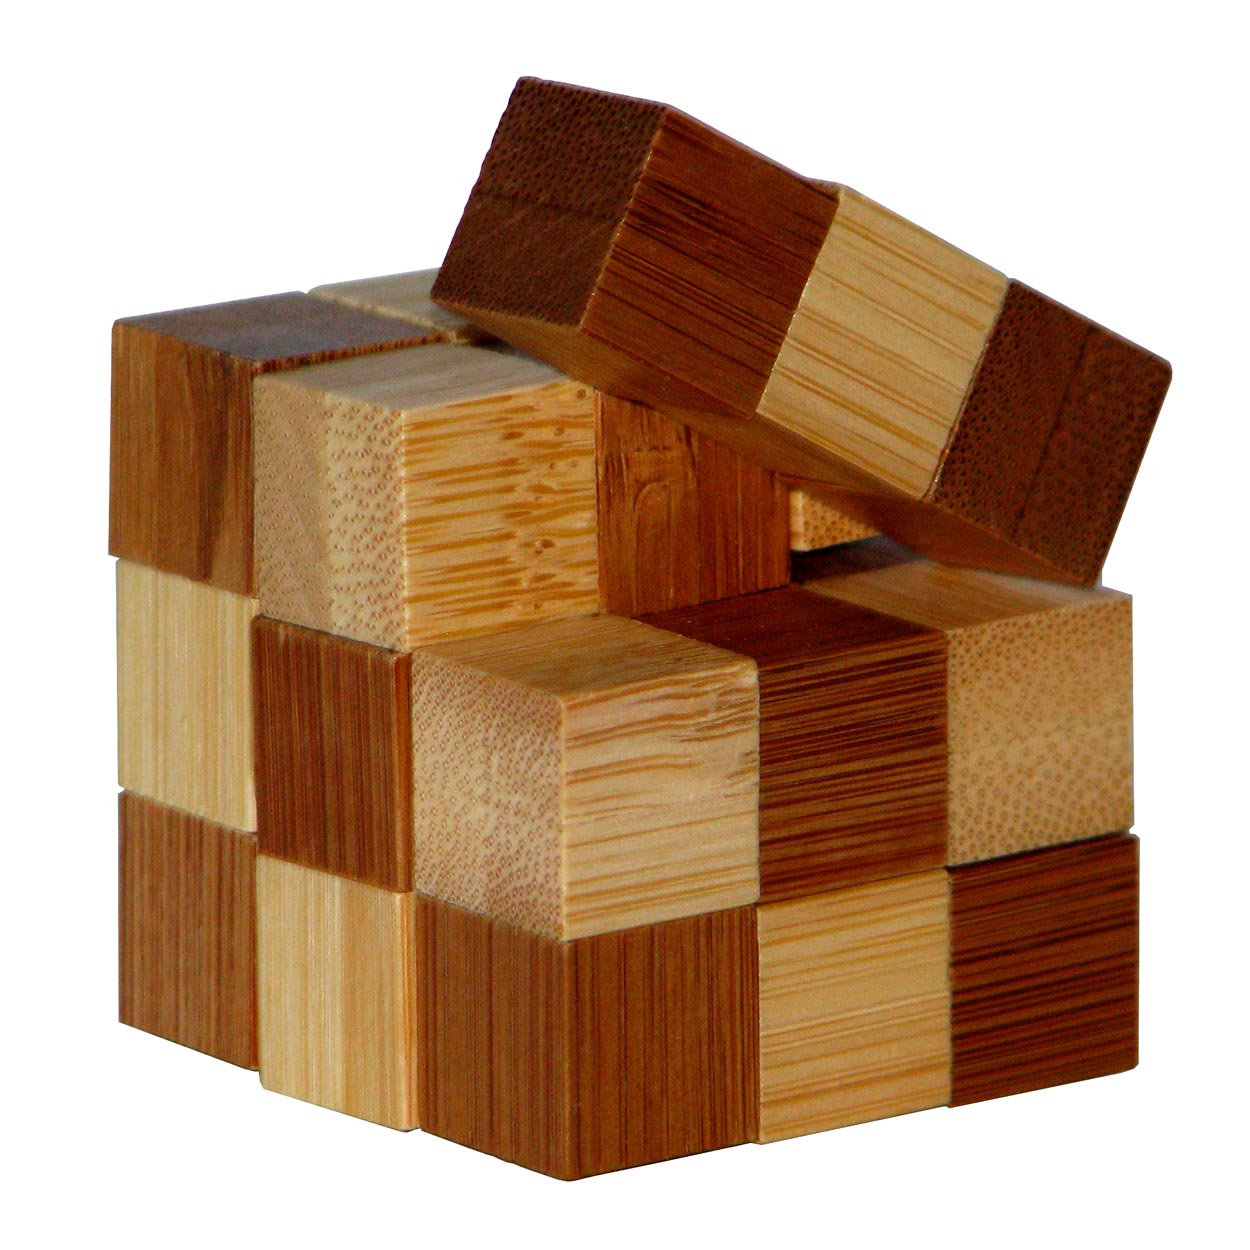 3D Bamboo Breinpuzzel Snake Cubes **